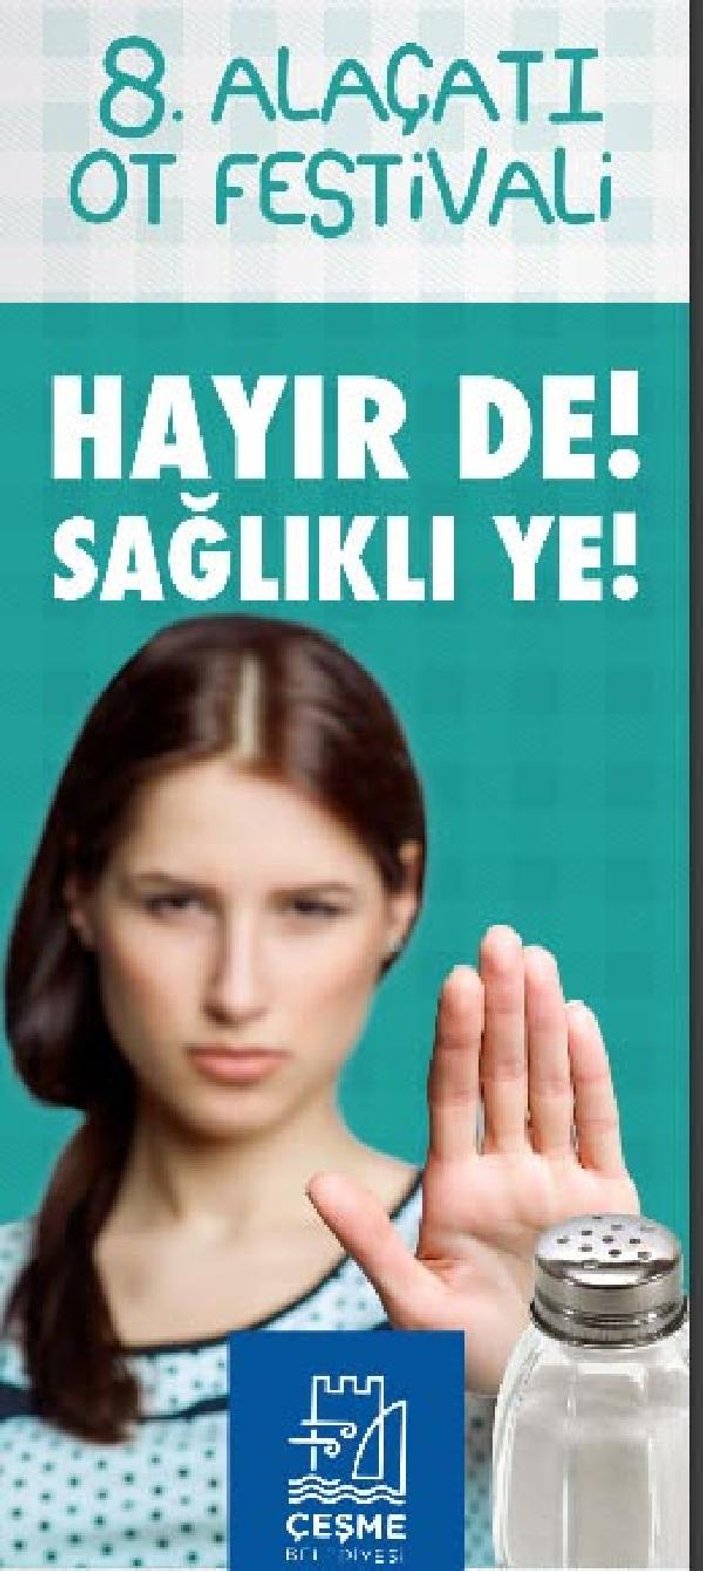 İzmir'deki ot festivali afişlerinde 'hayır'lı mesaj